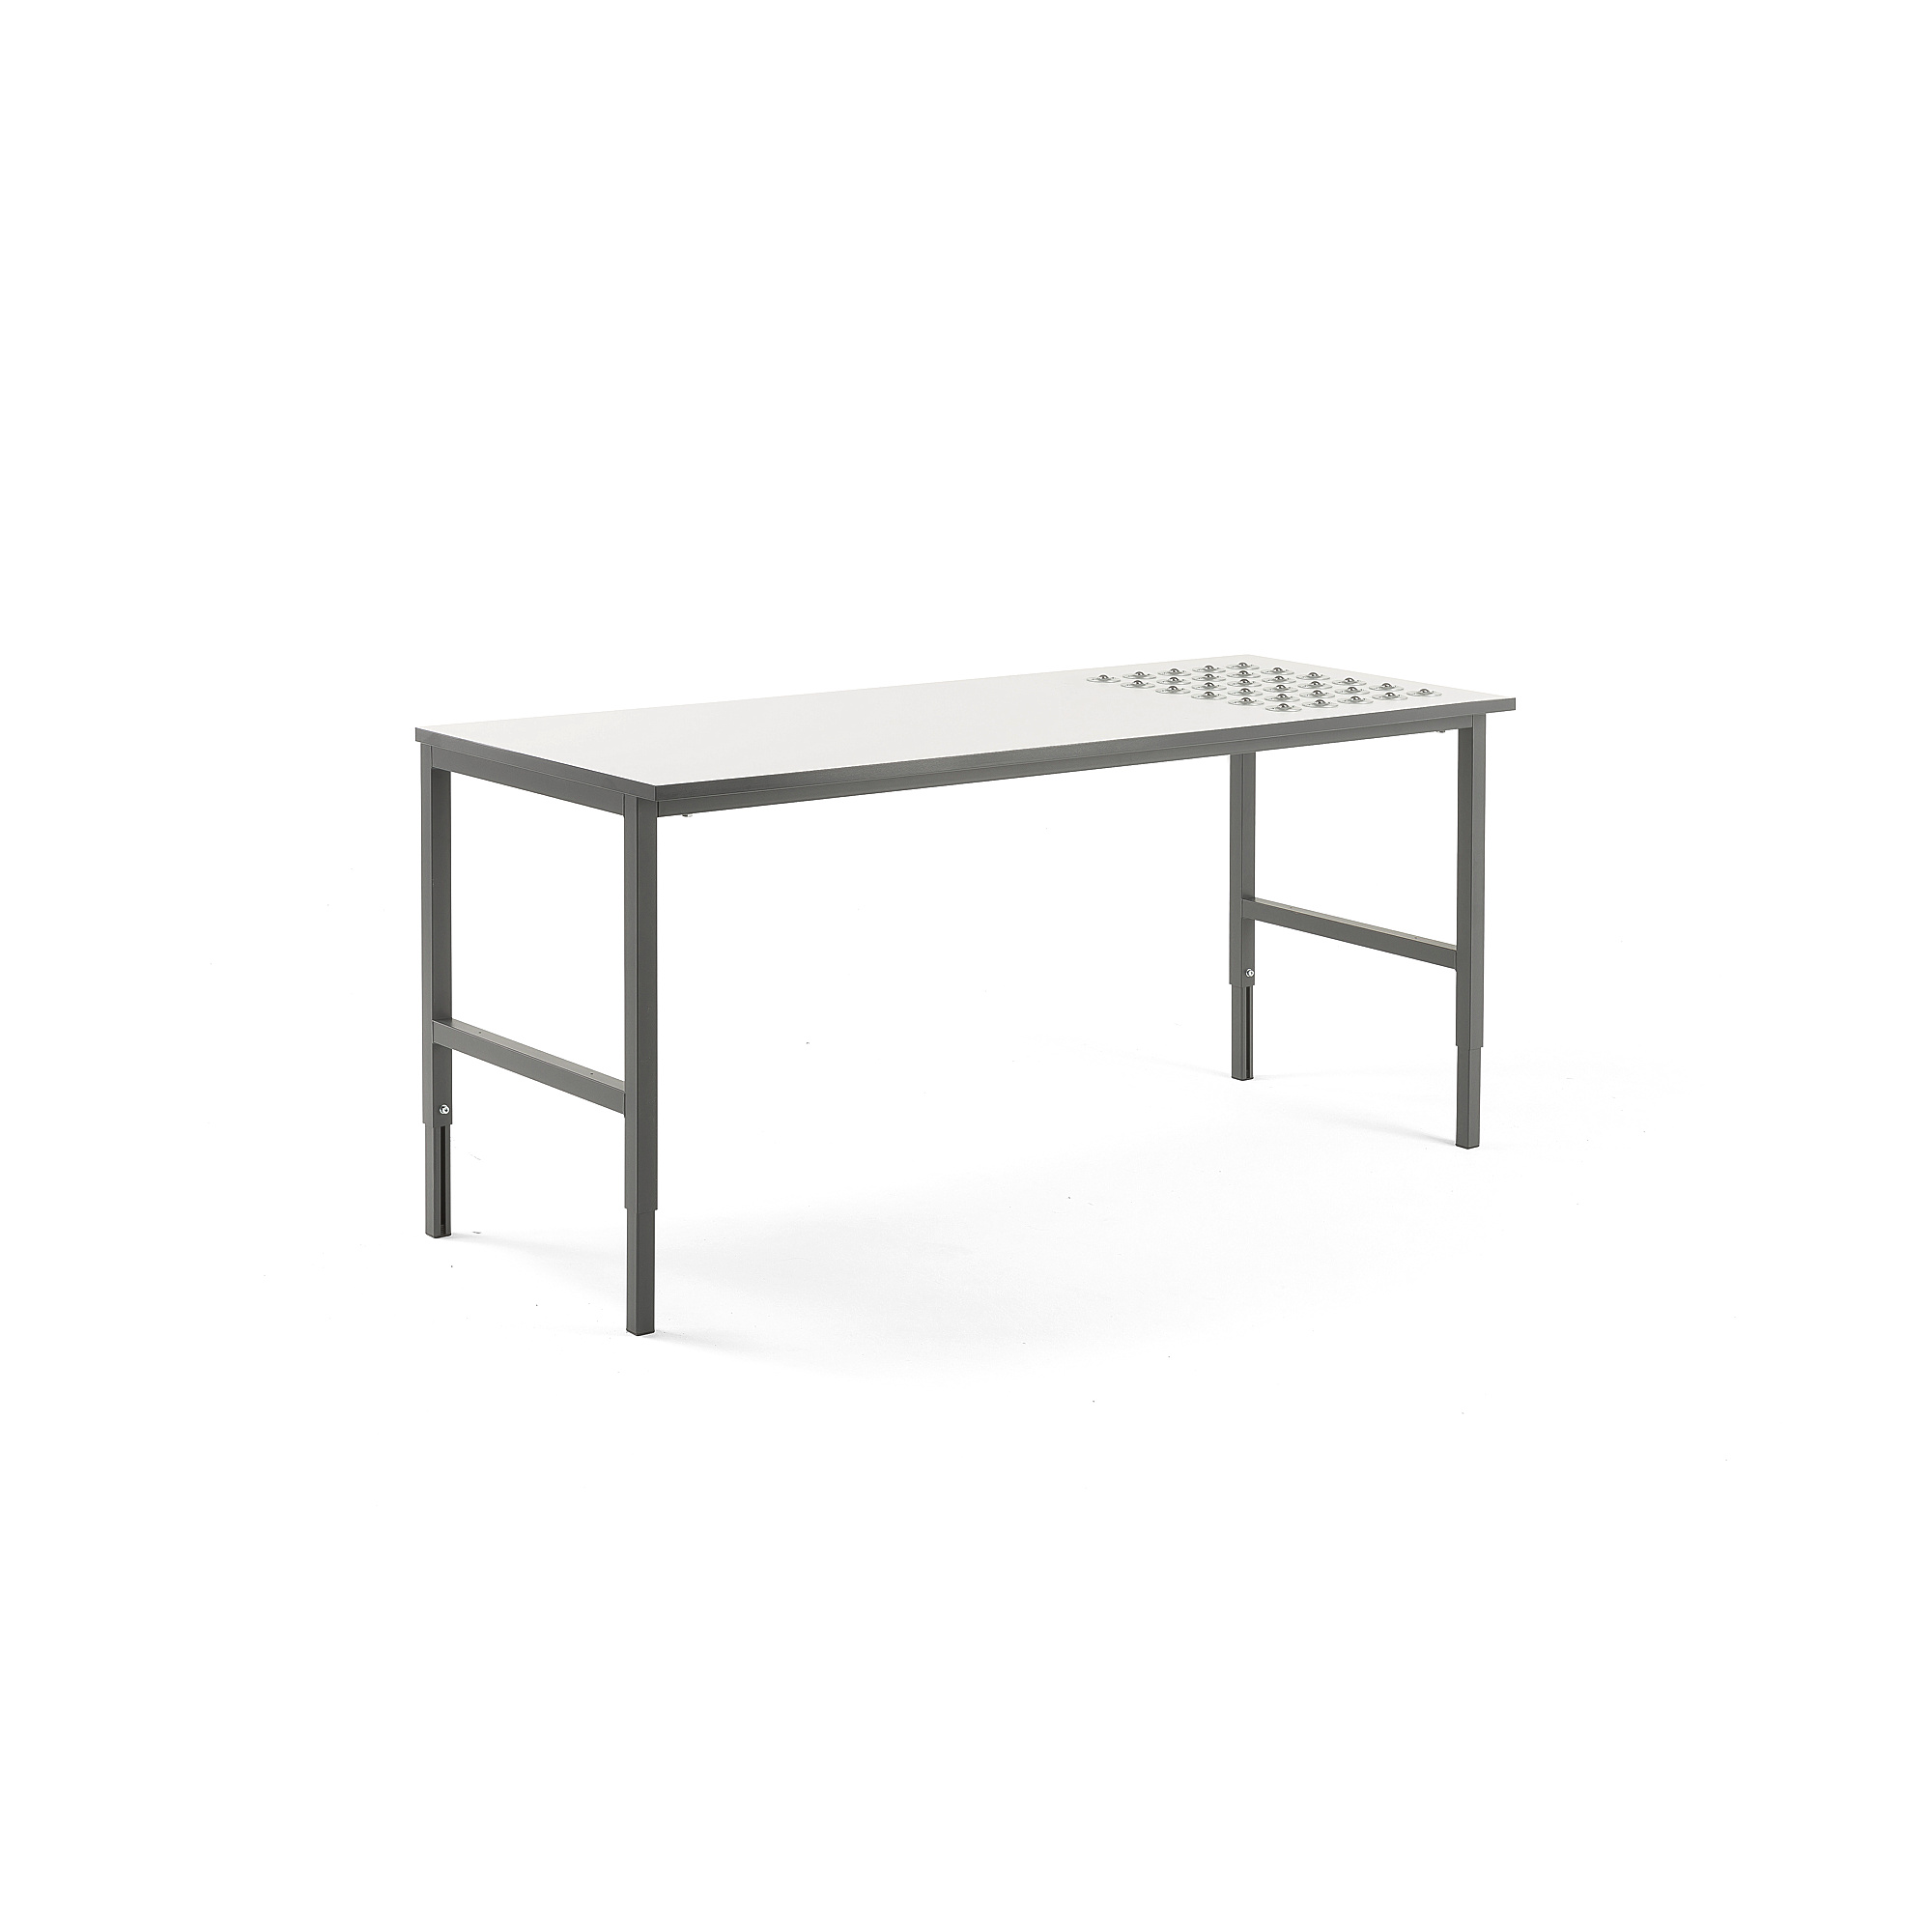 Pracovní stůl CARGO, s kuličkami, 2000x750 mm, bílá deska, šedý rám